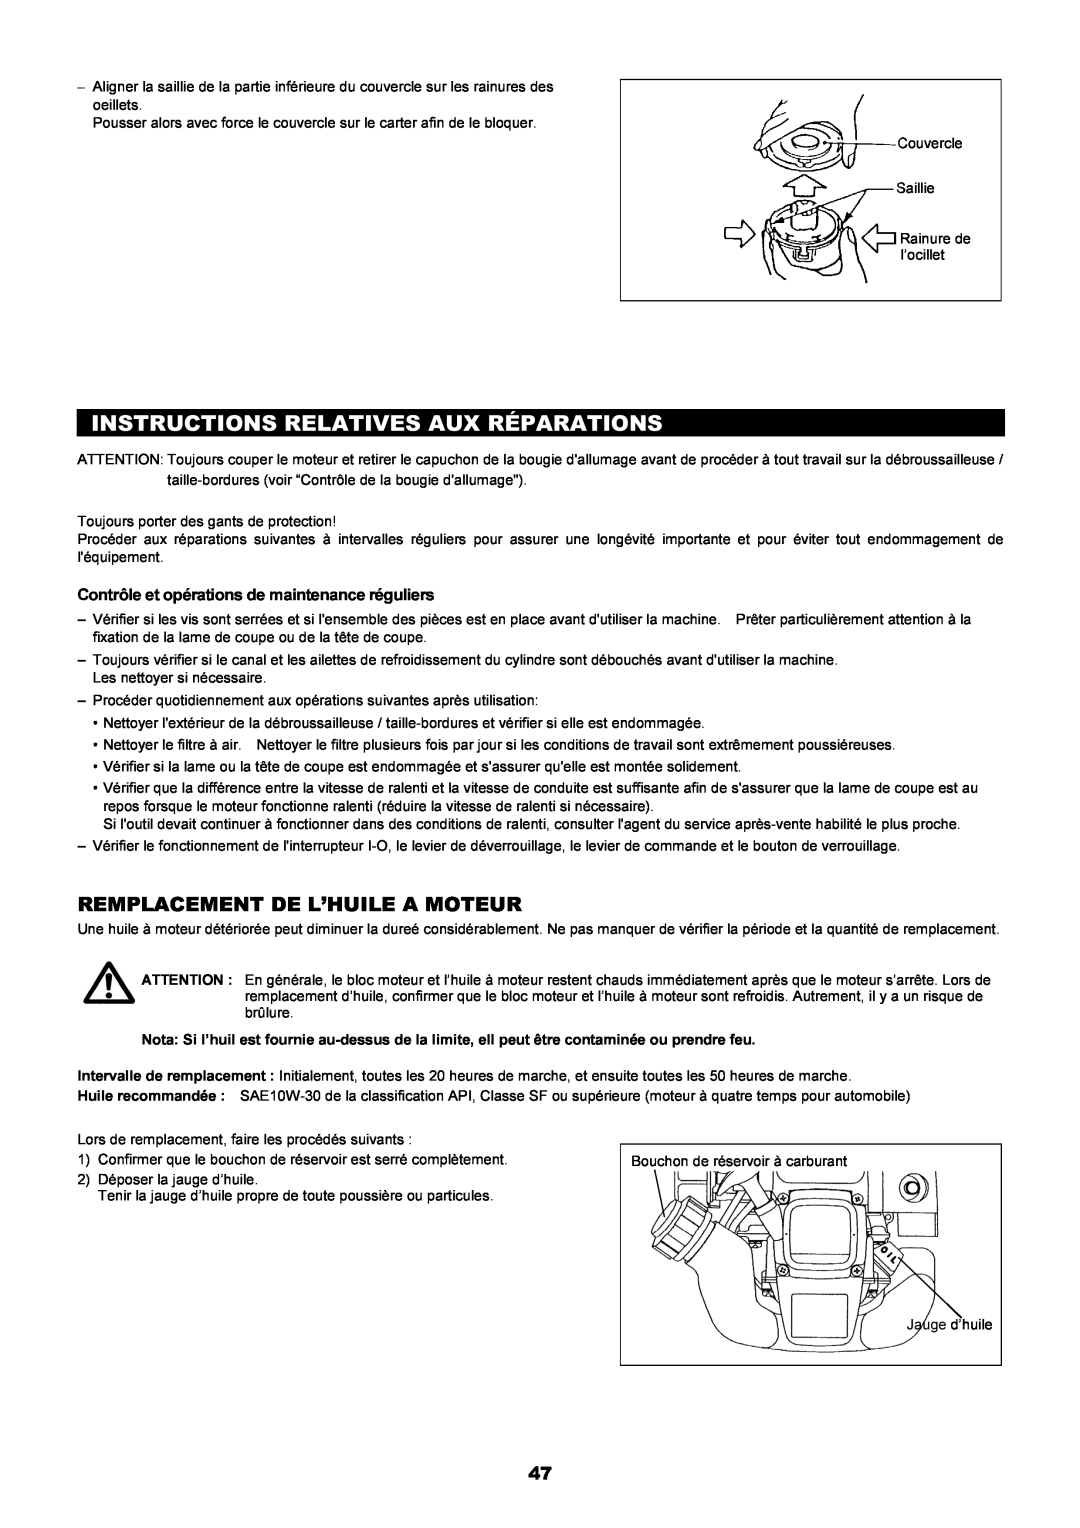 Dolmar MS-250.4, MS-251.4 instruction manual Instructions Relatives Aux Réparations, Remplacement De L’Huile A Moteur 